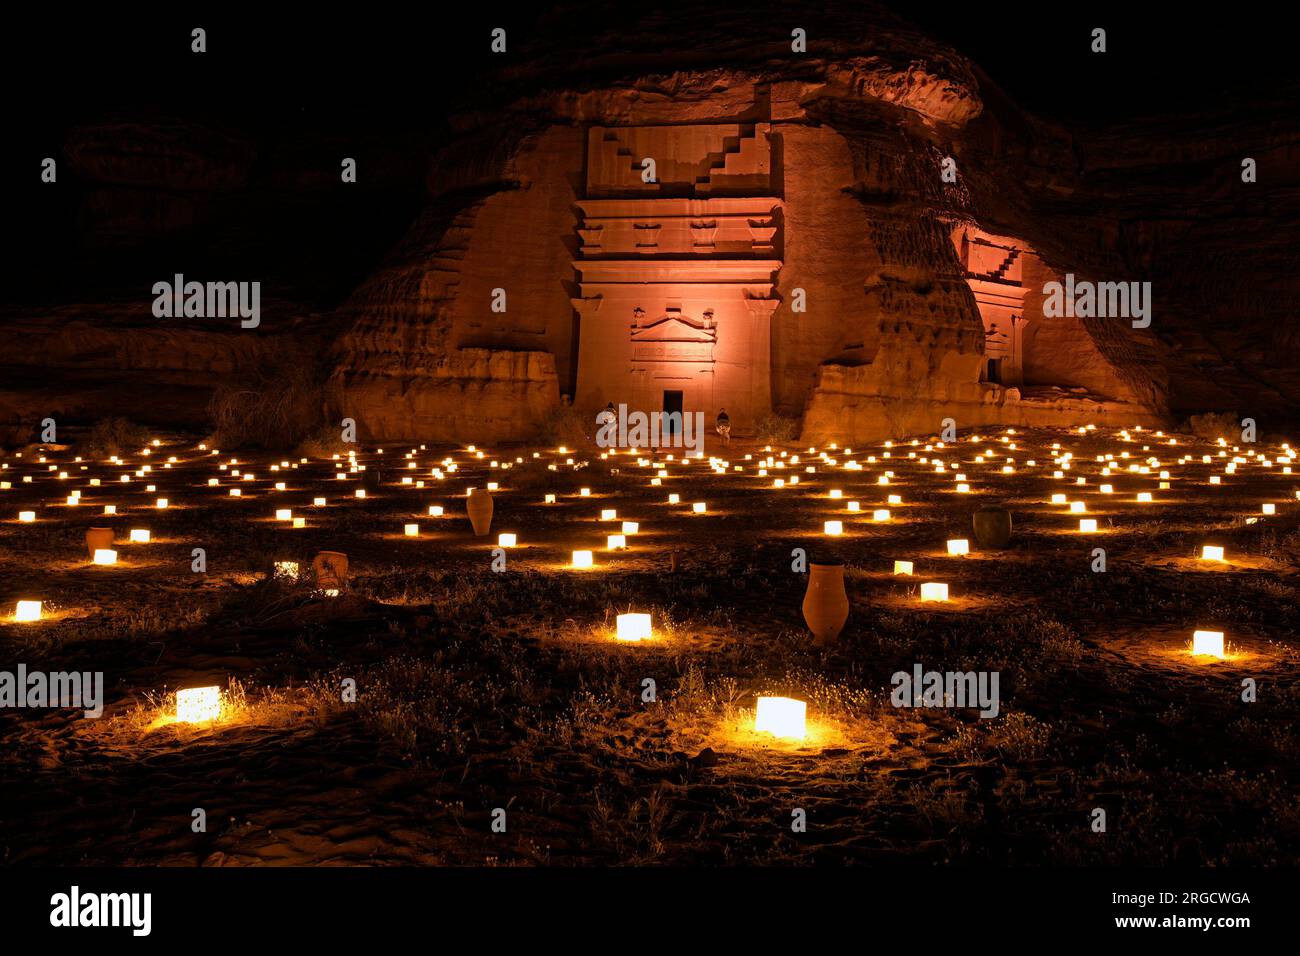 Alte Gräber von Hegra, beleuchtet durch Kerzenlicht, Alula, Saudi-Arabien Stockfoto